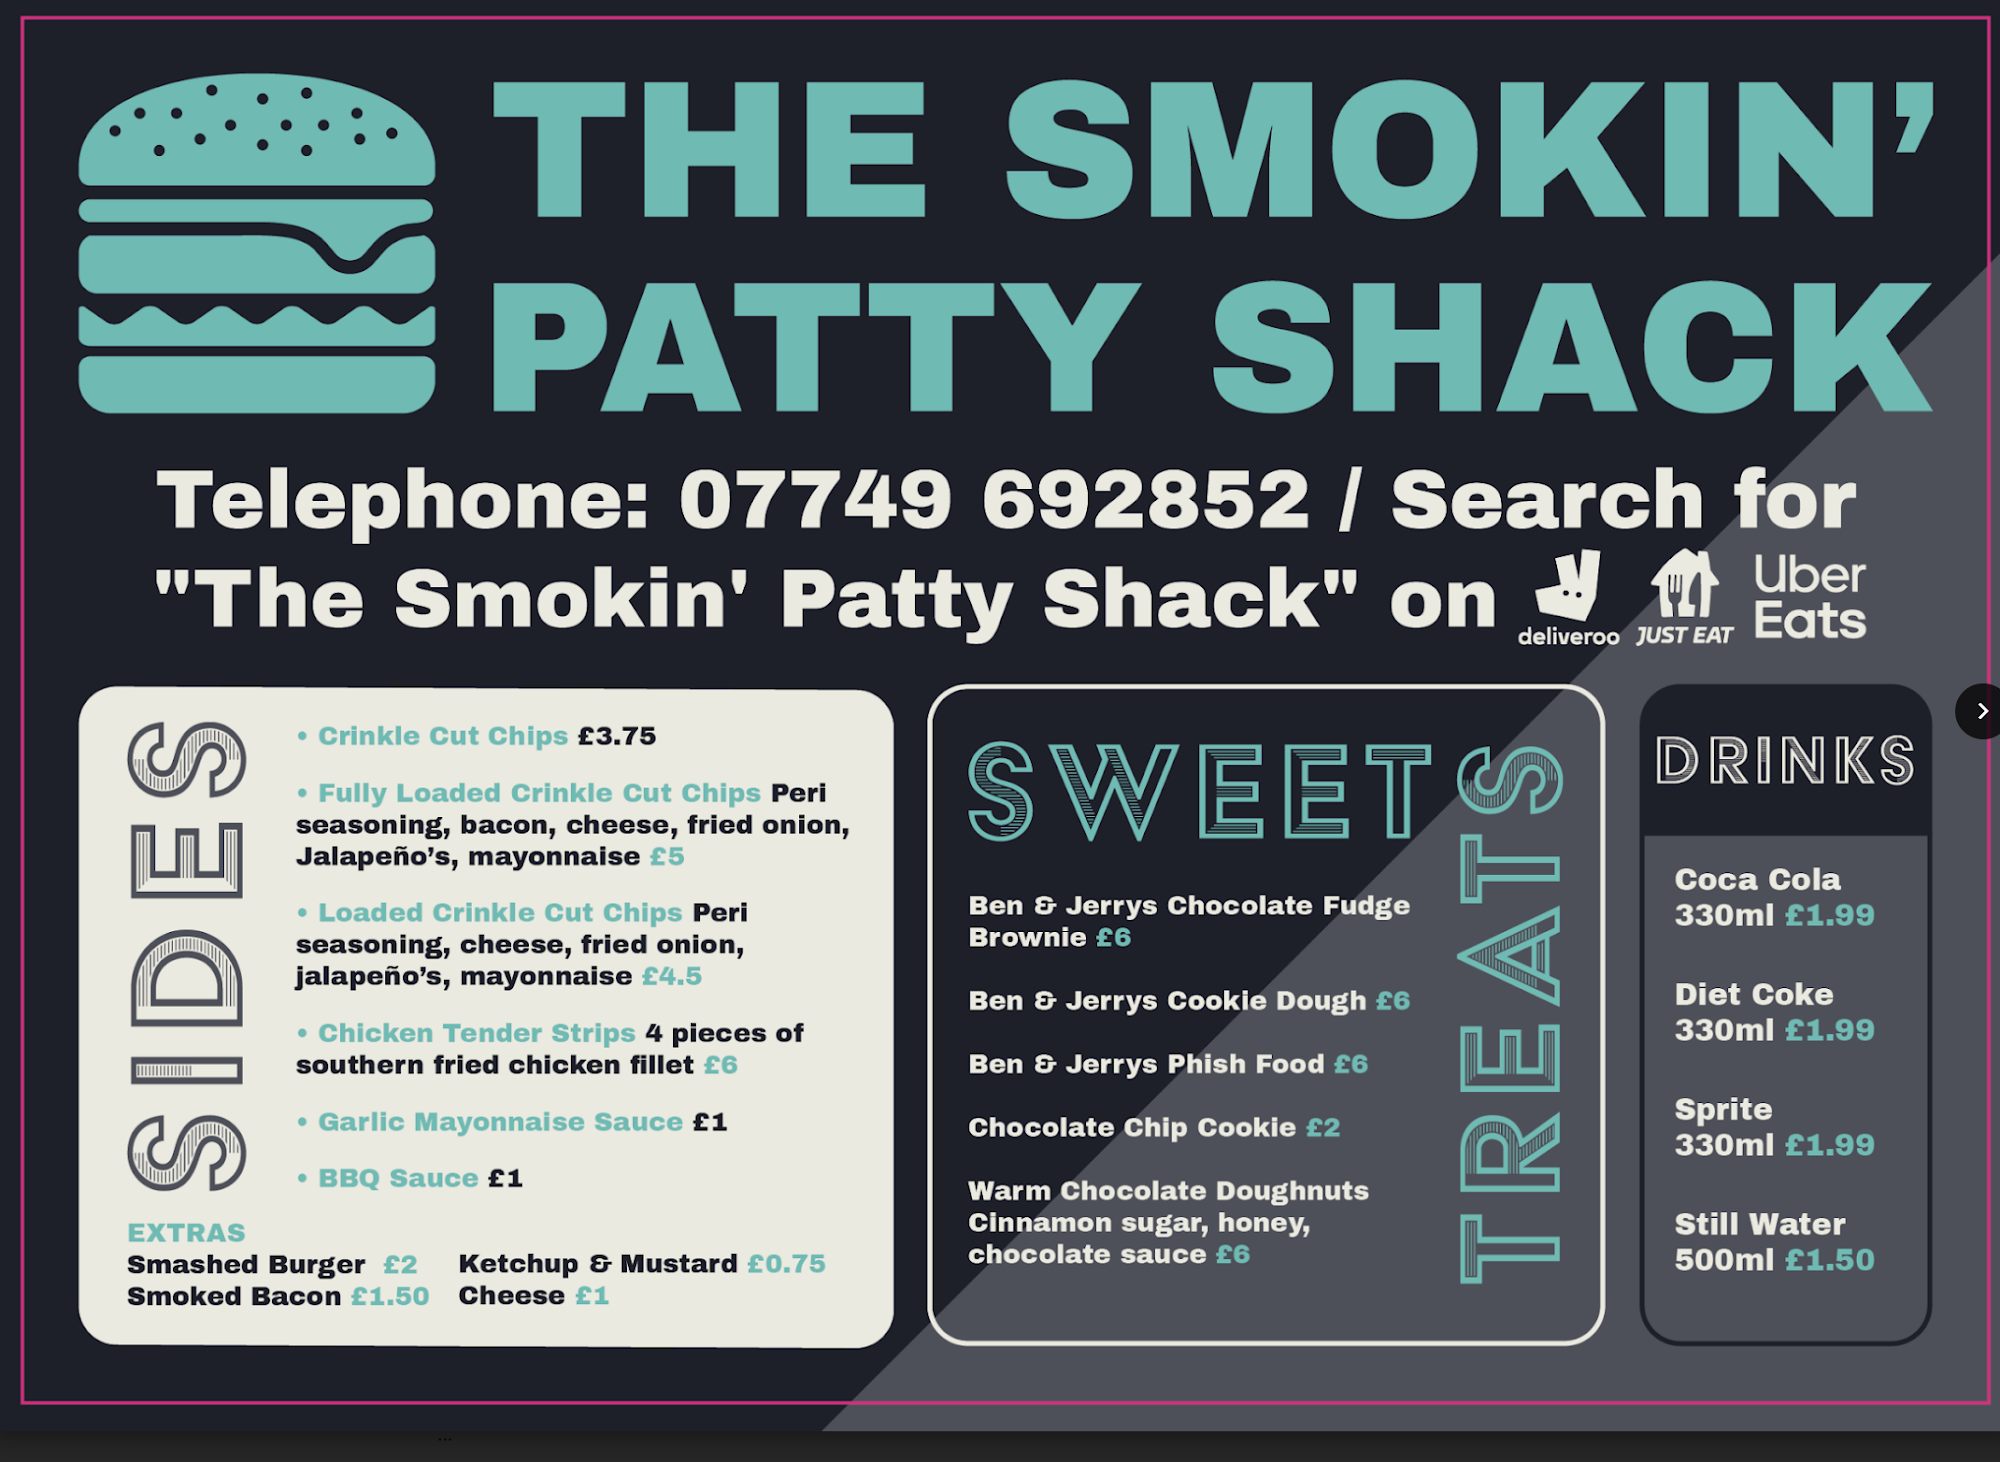 The Smokin' Patty Shack